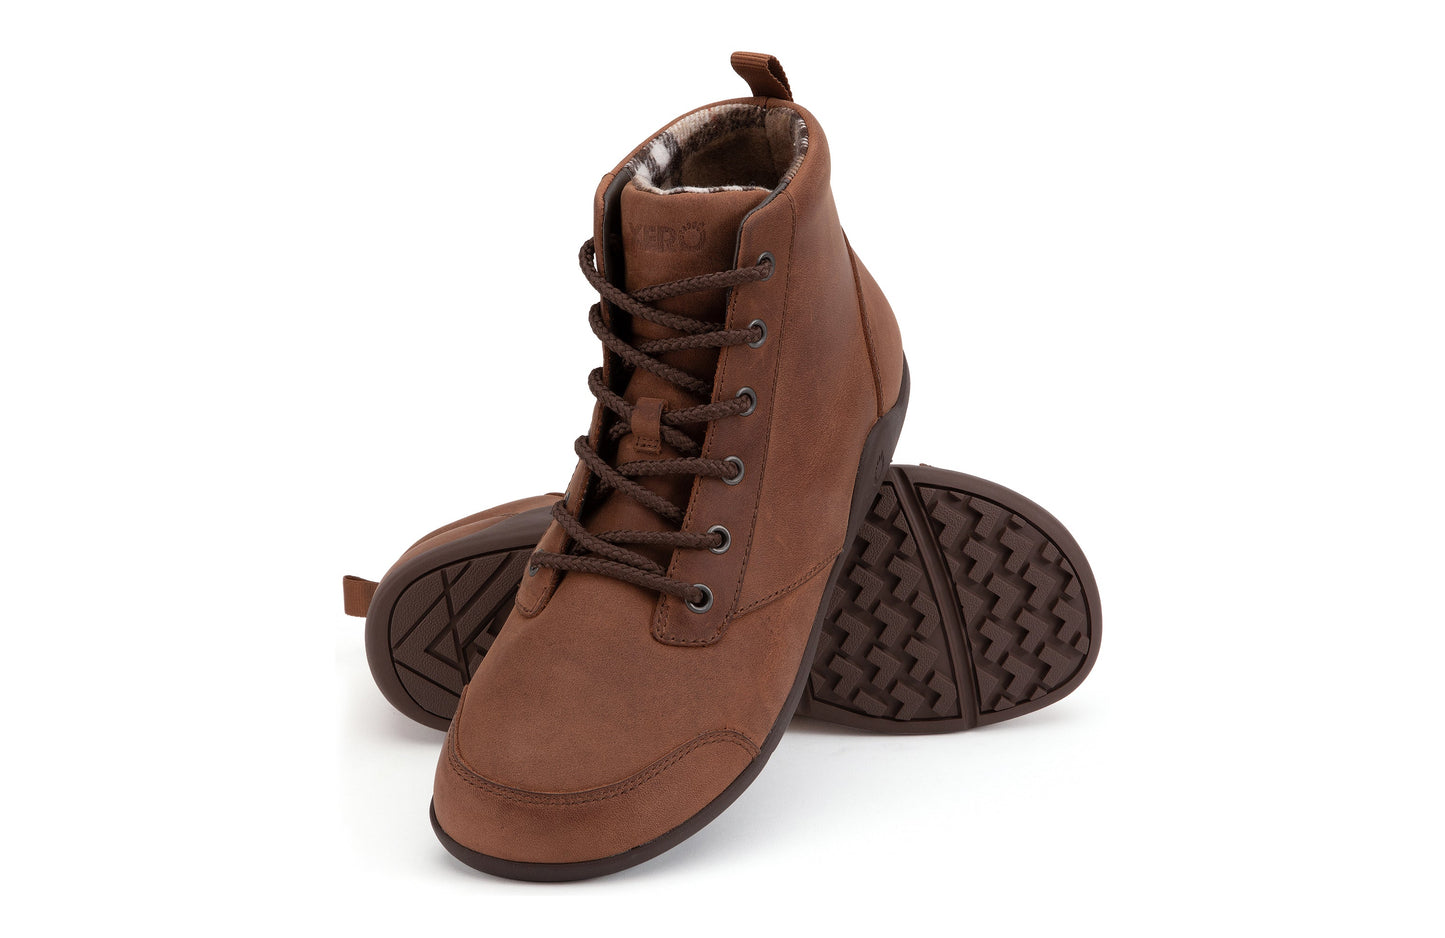 Xero Shoes Denver Leather barfods vinterstøvler til mænd i farven brown, par